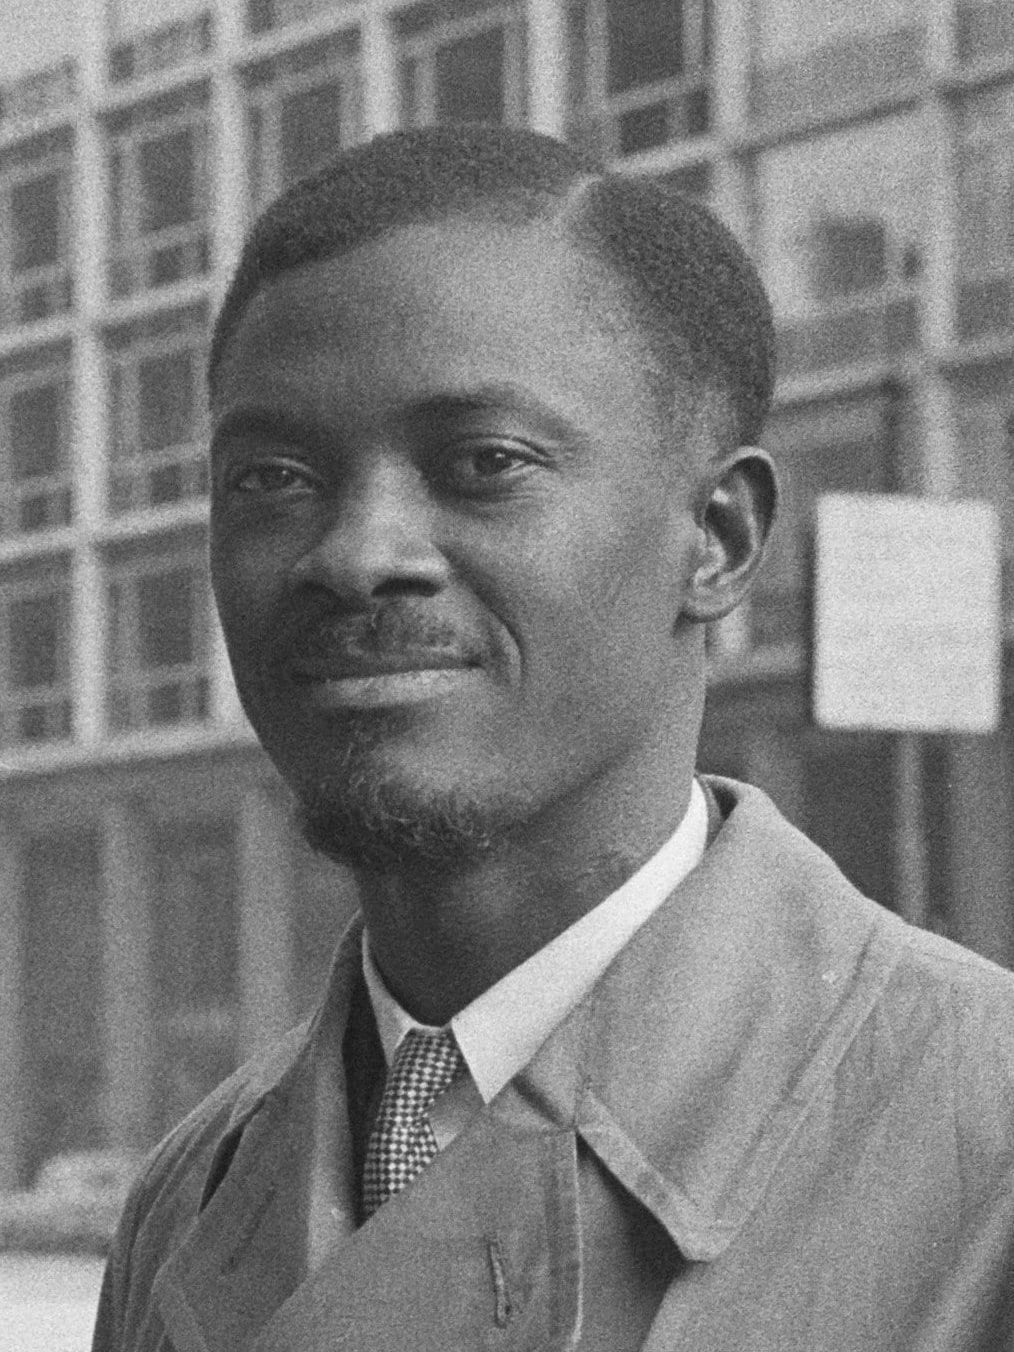 RDC : 12 millions de dollars américains pour rapatrier le reste du corps de Patrice Lumumba